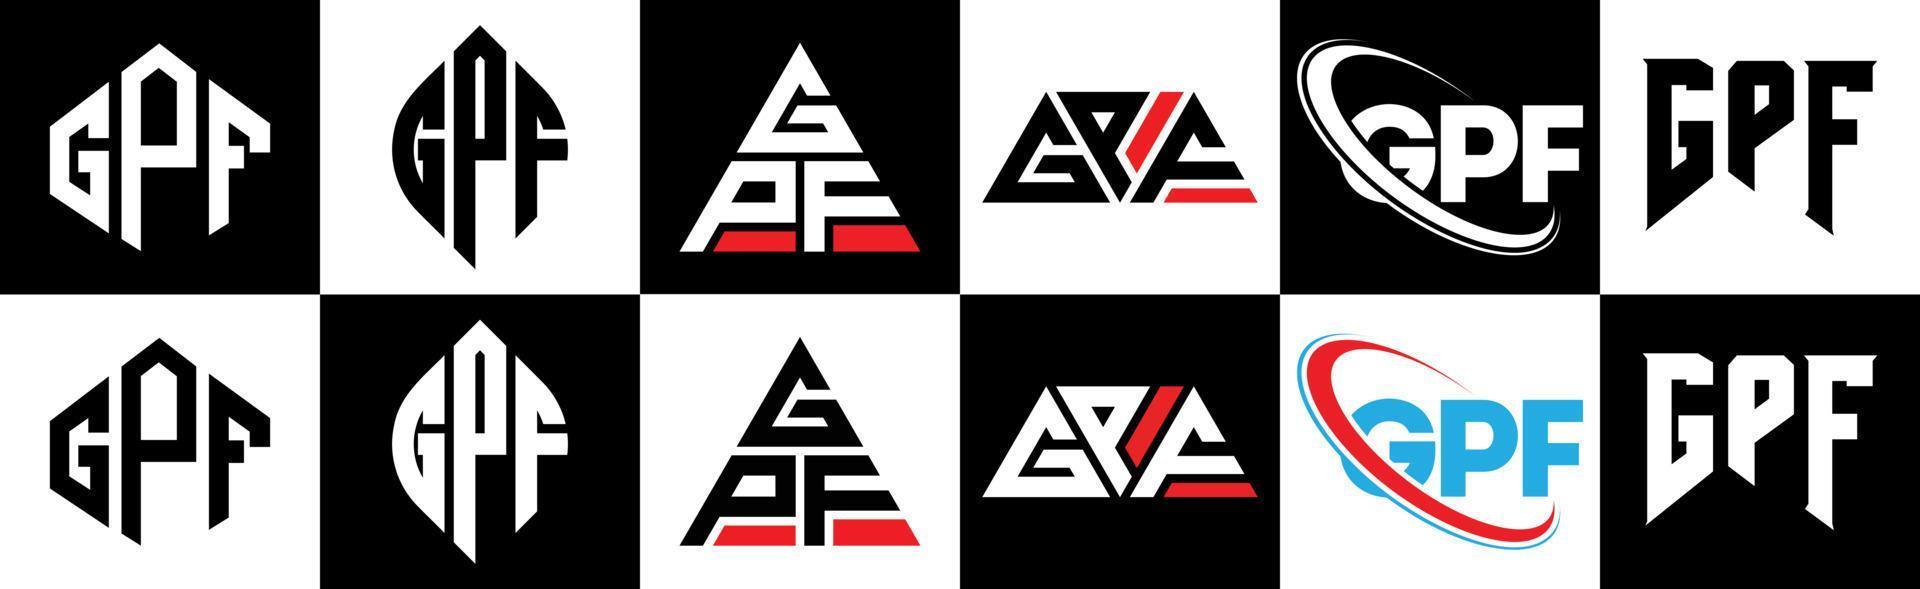 gpf-Buchstaben-Logo-Design in sechs Stilen. gpf polygon, kreis, dreieck, sechseck, flacher und einfacher stil mit schwarz-weißem buchstabenlogo in einer zeichenfläche. gpf minimalistisches und klassisches Logo vektor